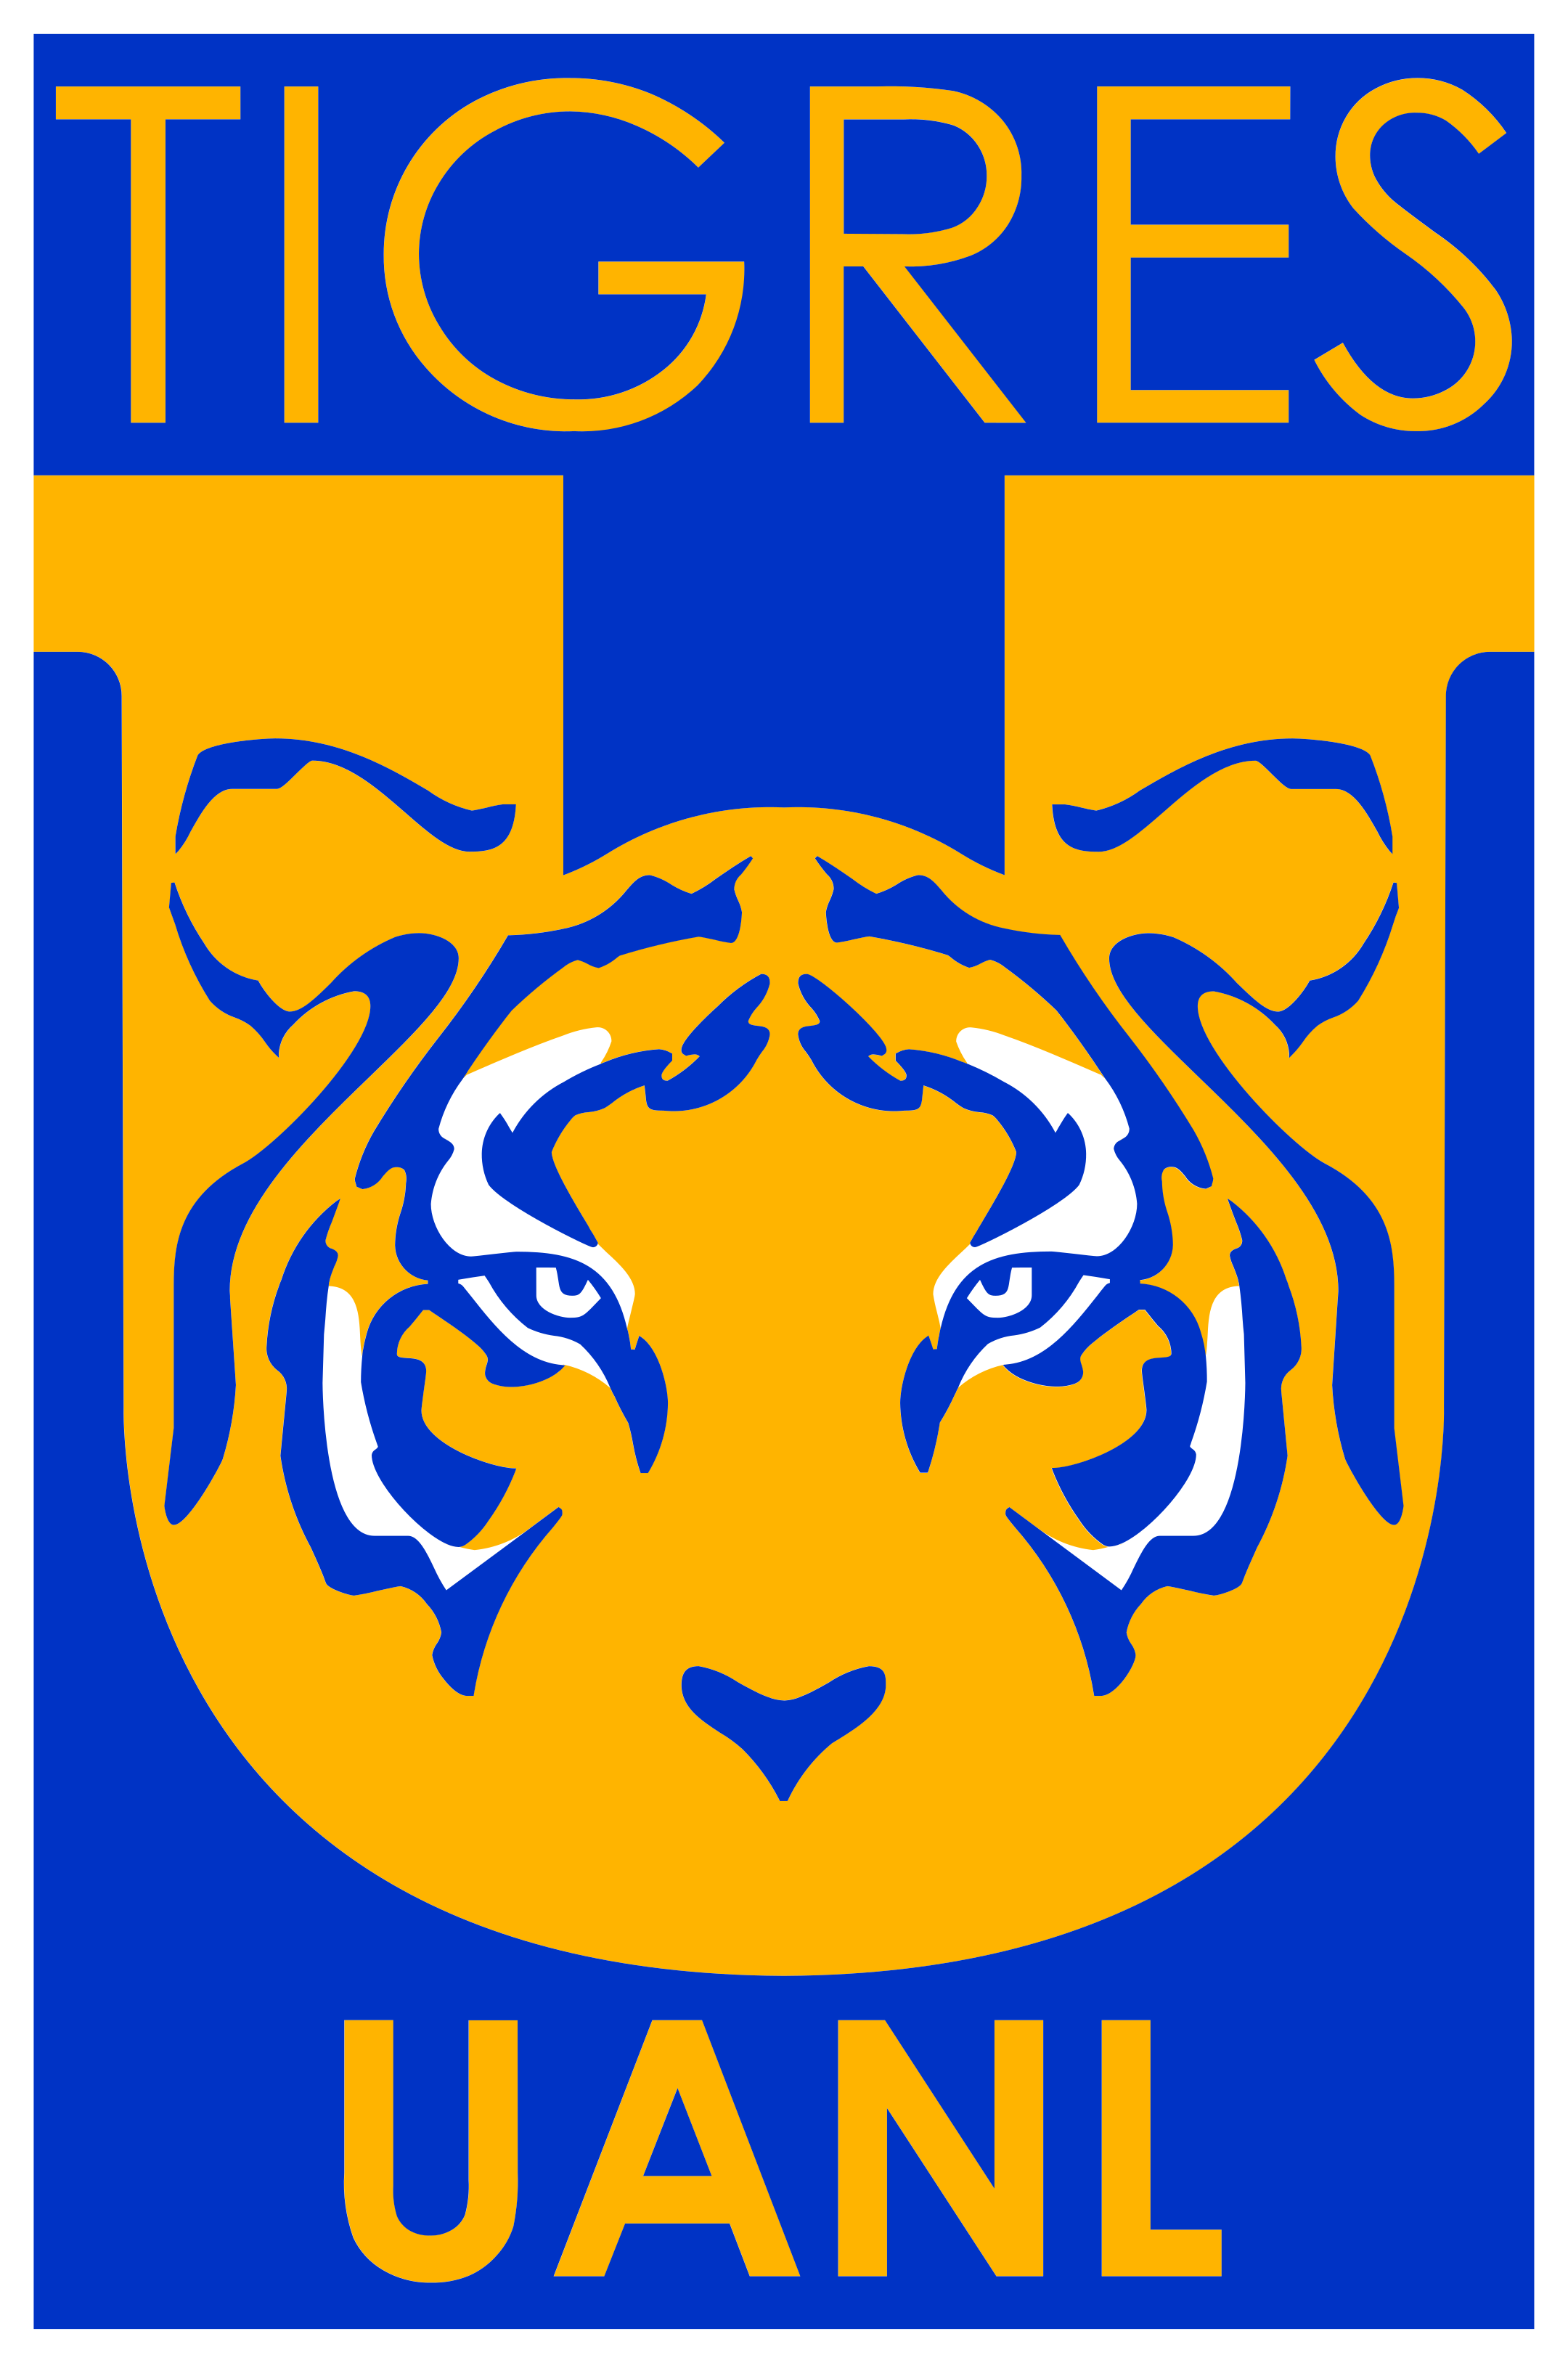 club tigres uanl logo 1 - Club Tigres UANL Logo